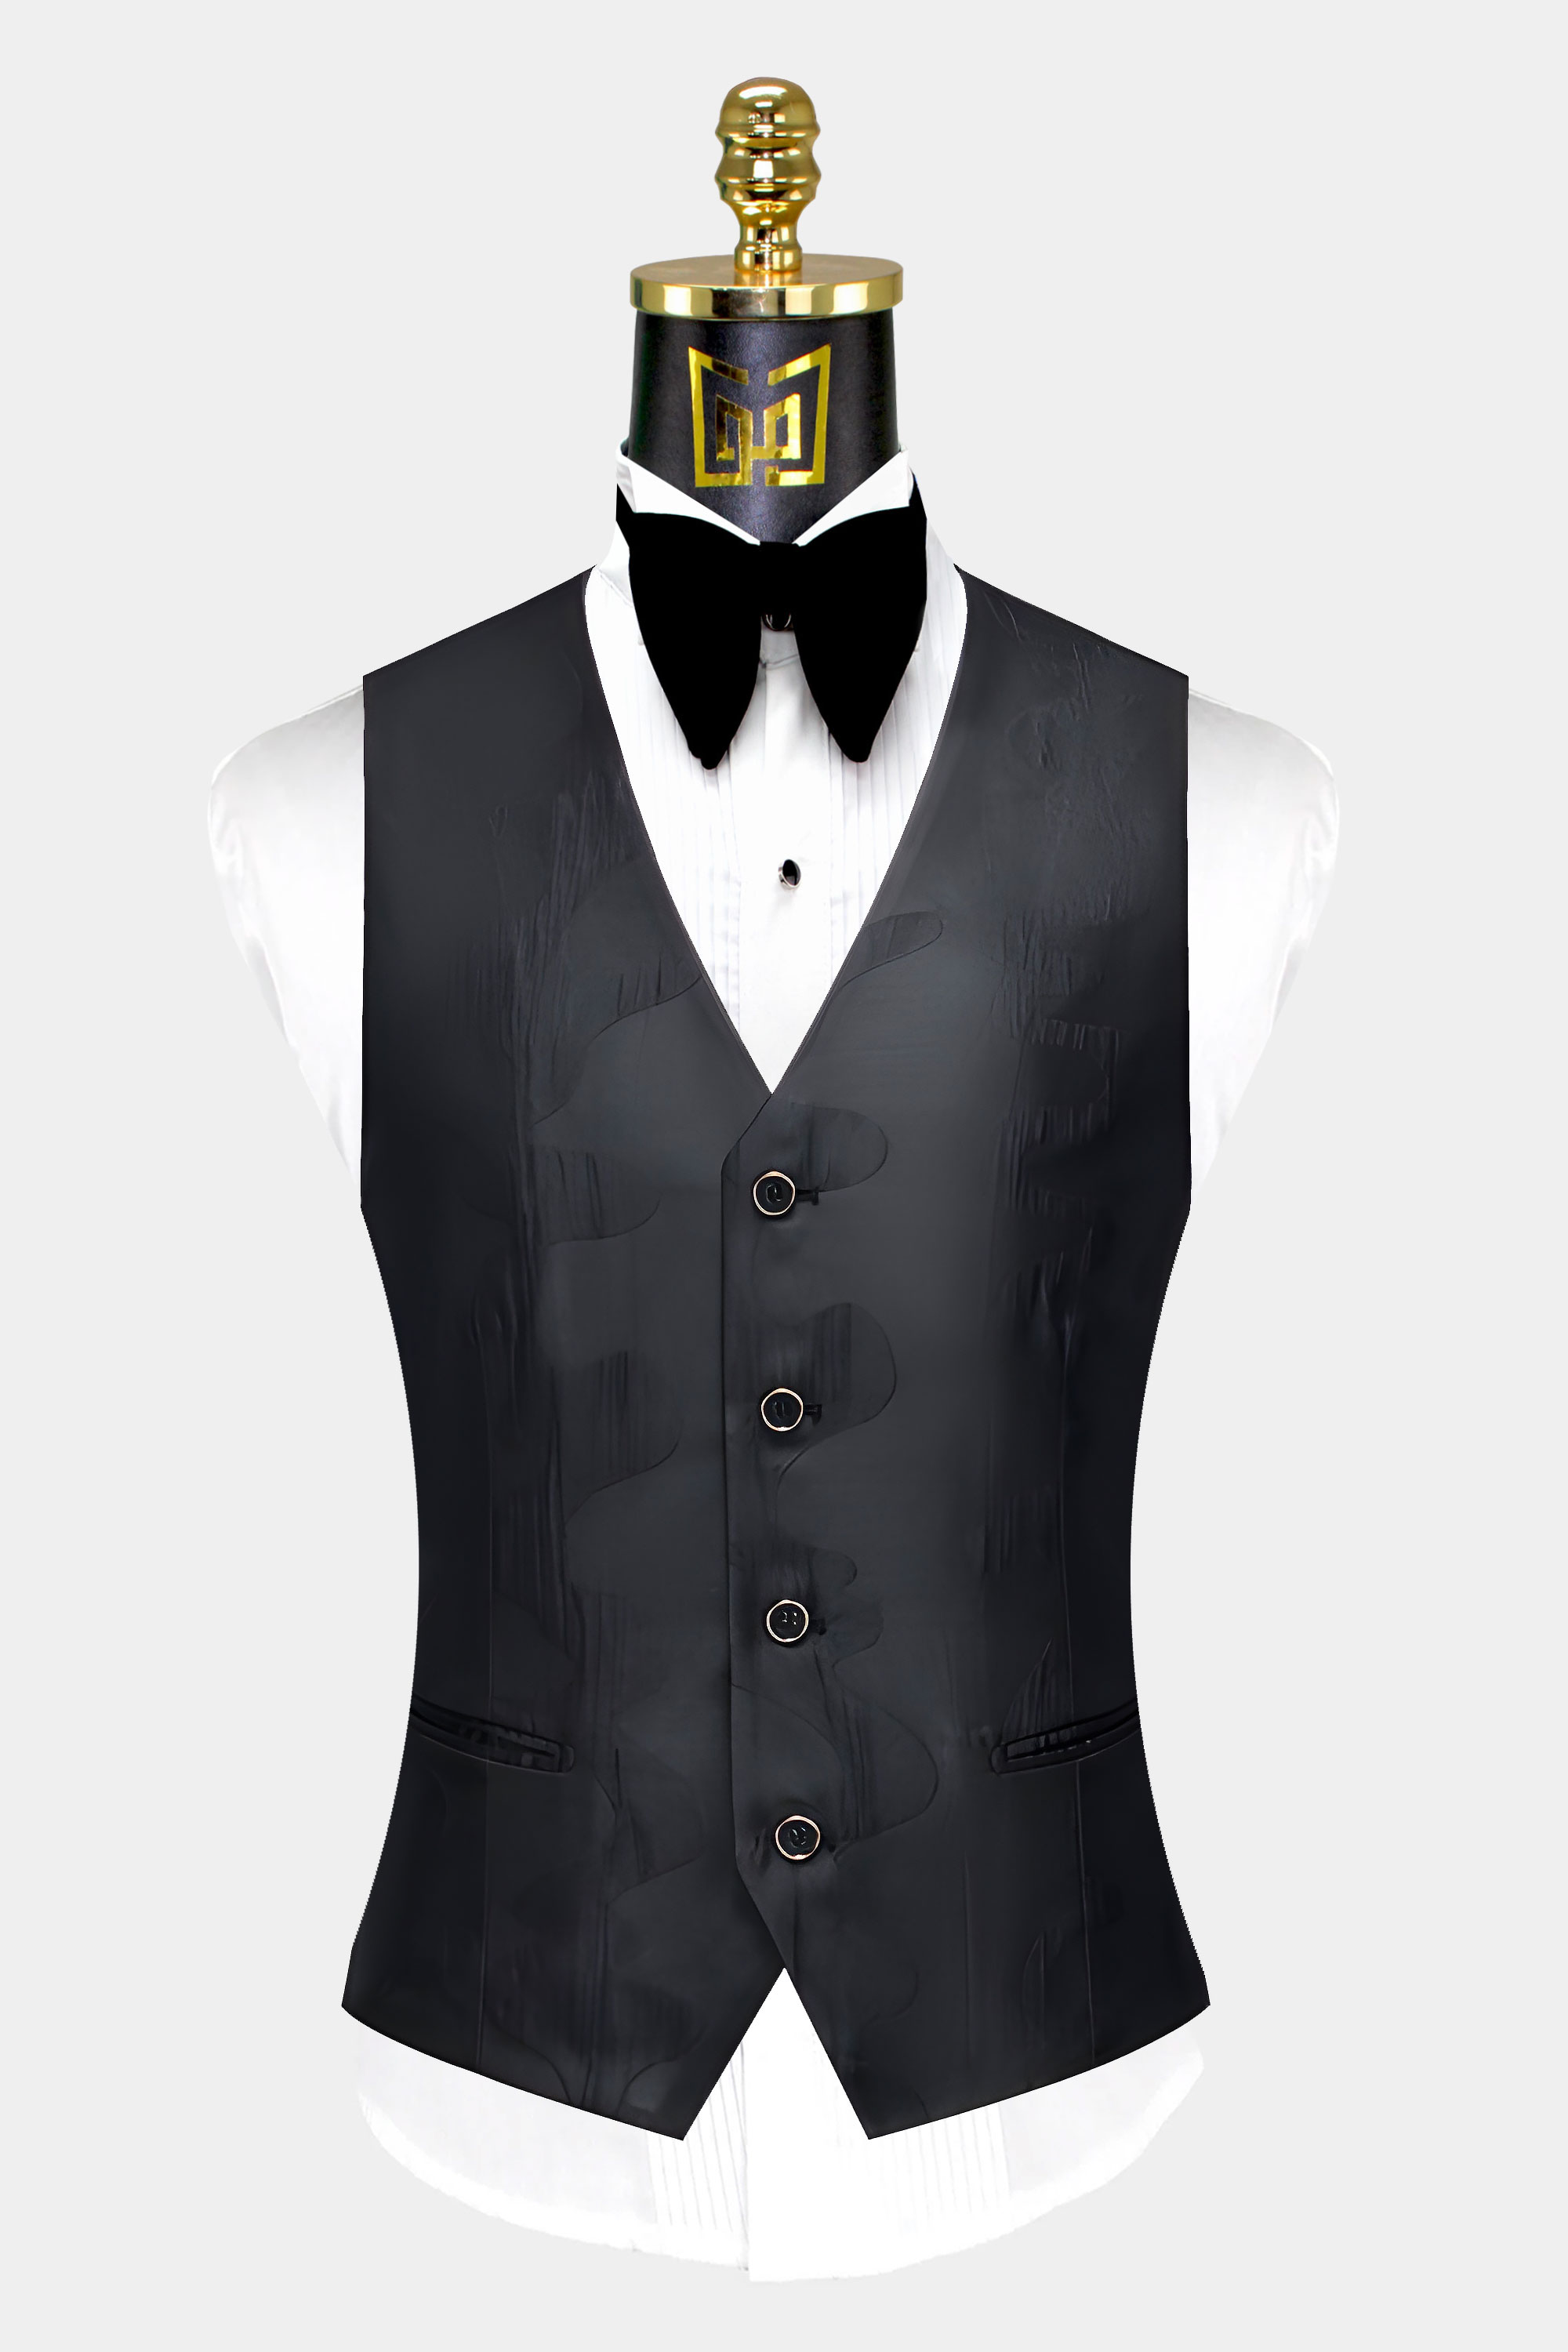 Abstract-Black-Tuxedo-Vest-from-Gentlemansguru.com